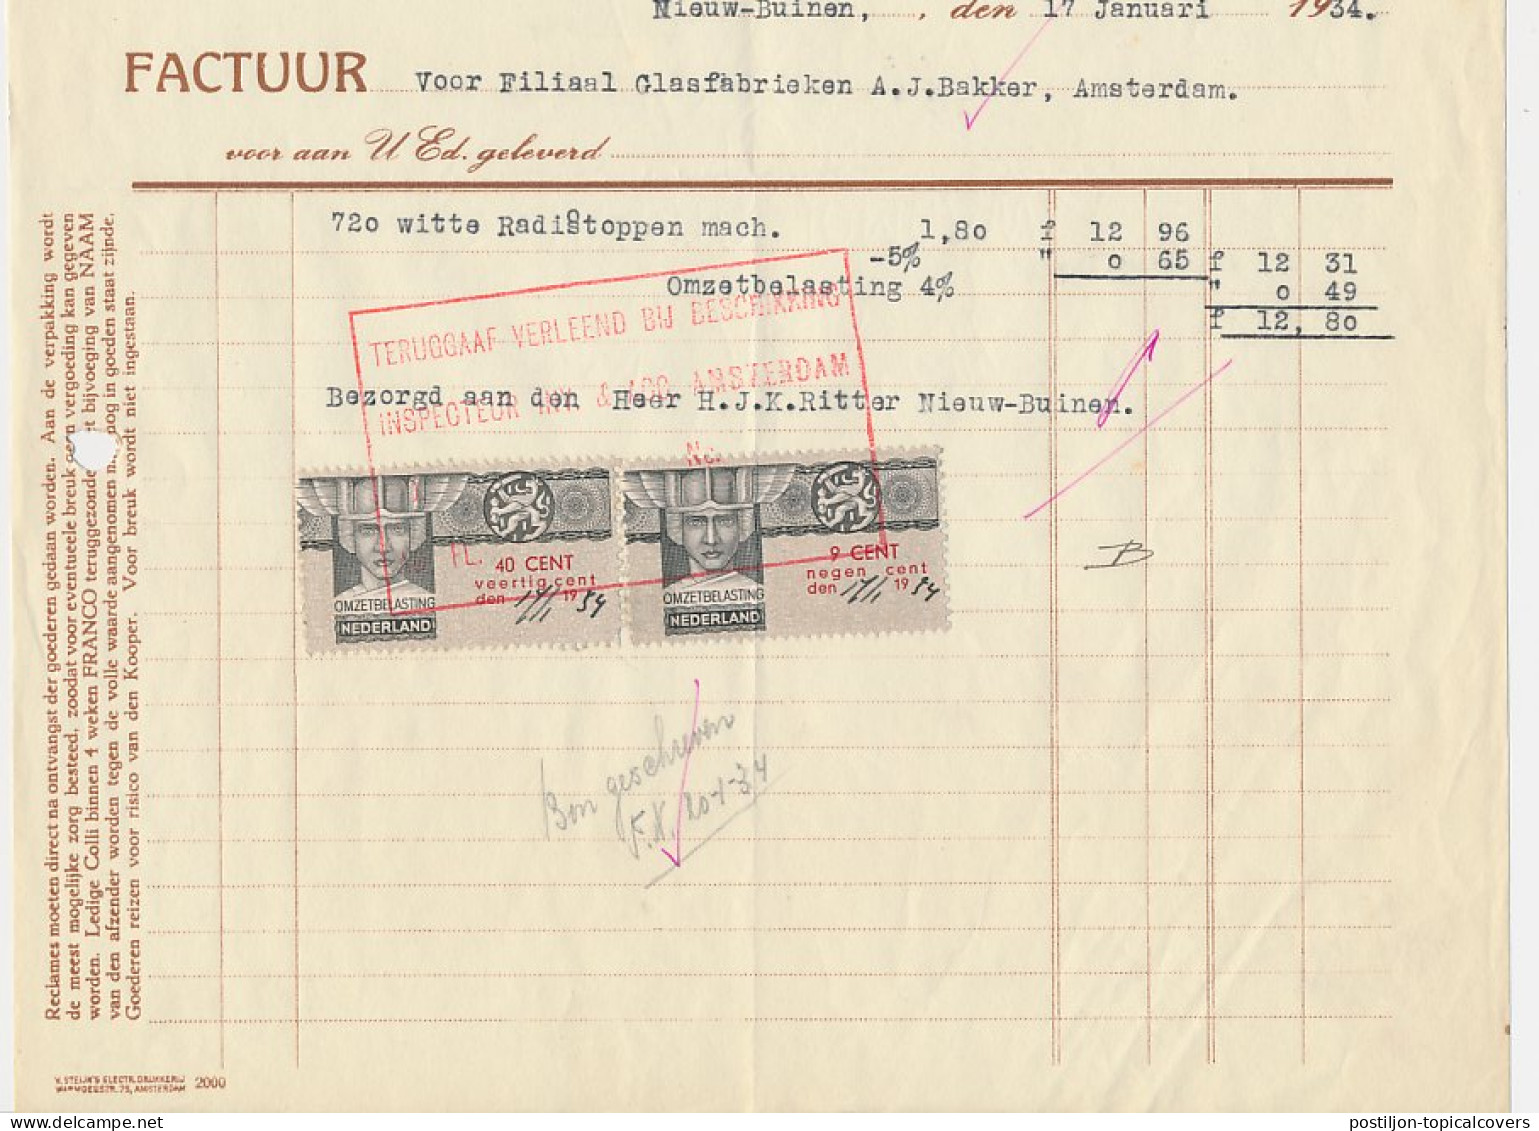 Omzetbelasting 9 CENT / 40 CENT - Nieuw Buinen 1934 - Fiscales